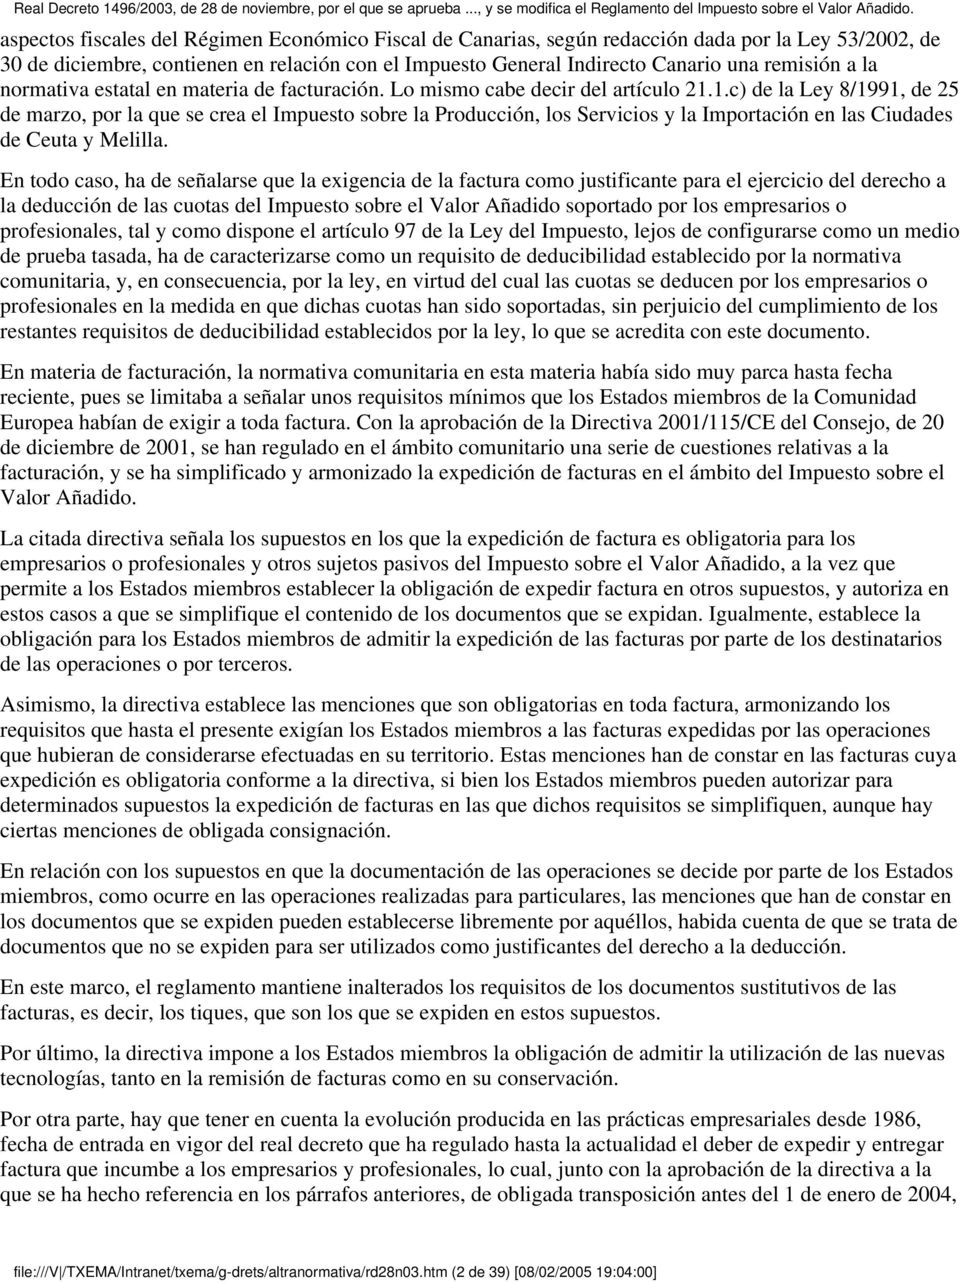 1.c) de la Ley 8/1991, de 25 de marzo, por la que se crea el Impuesto sobre la Producción, los Servicios y la Importación en las Ciudades de Ceuta y Melilla.